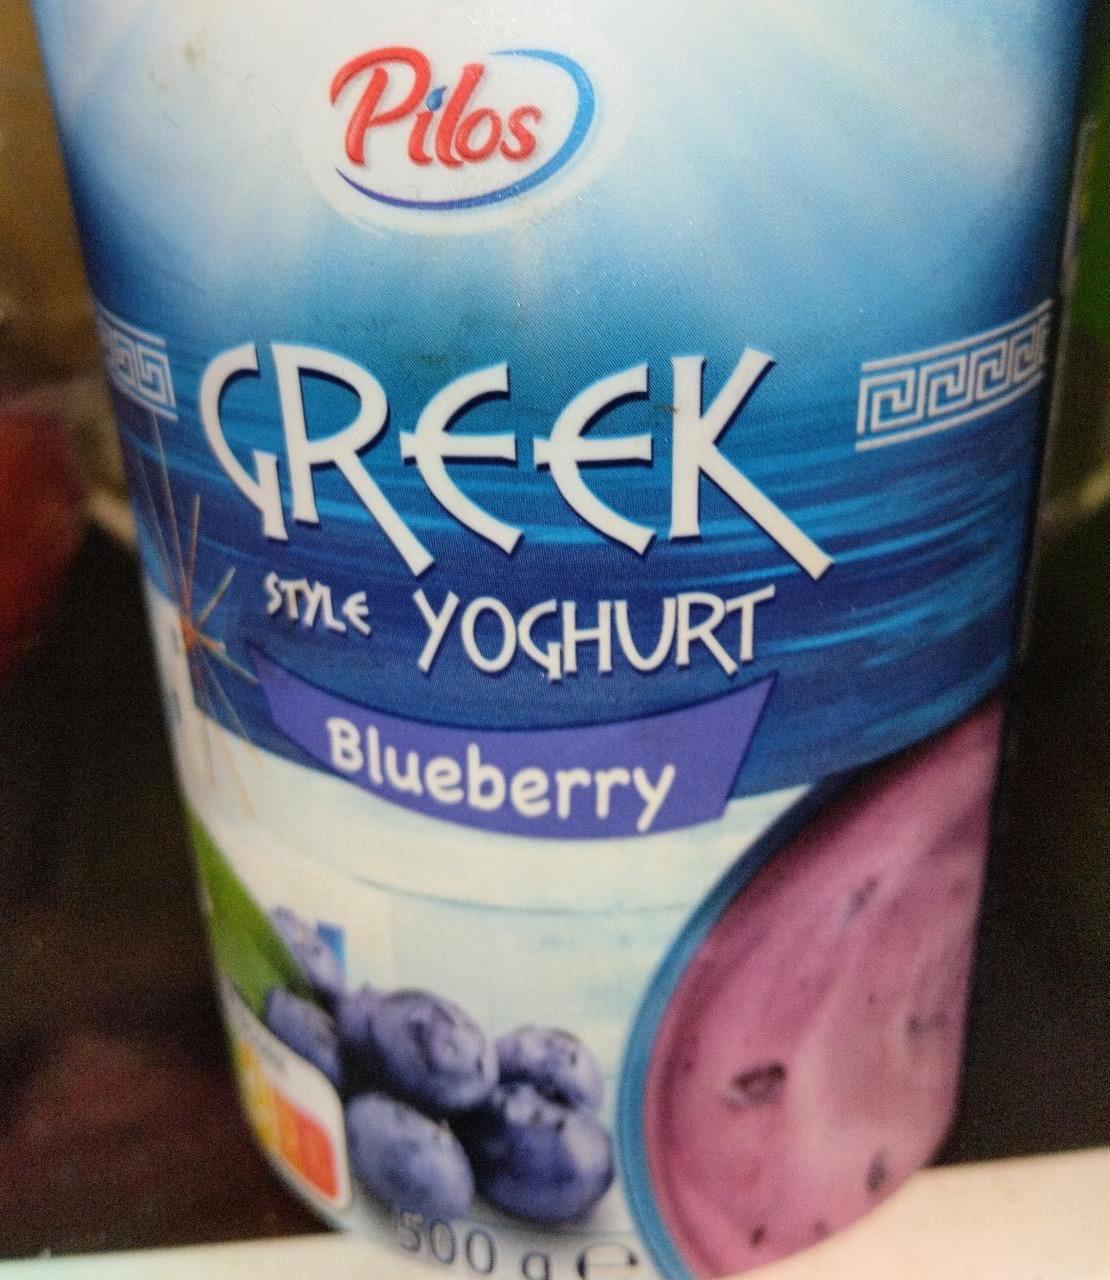 Képek - Greek style yoghurt Blueberry Pilos